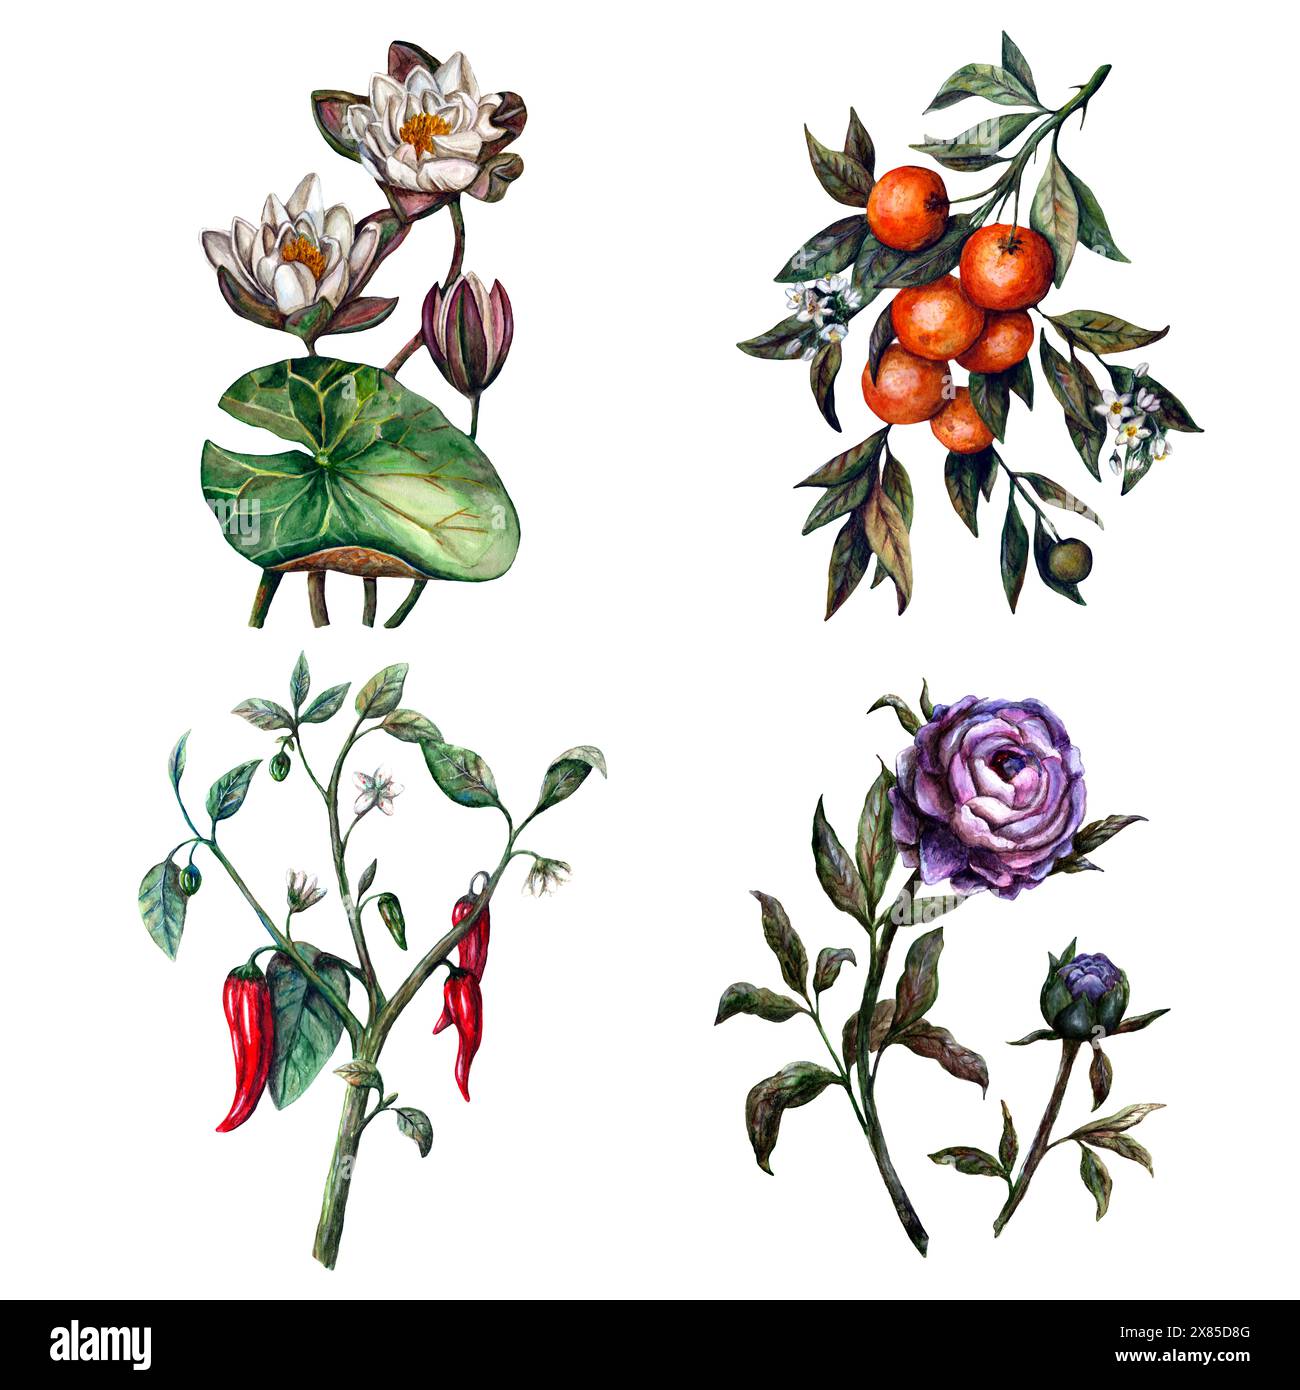 Ci sono quattro diverse varietà di piante e fiori esposti su uno sfondo bianco, caratterizzato da una combinazione di rose, fichi d'India e altri arbusti fioriti Foto Stock